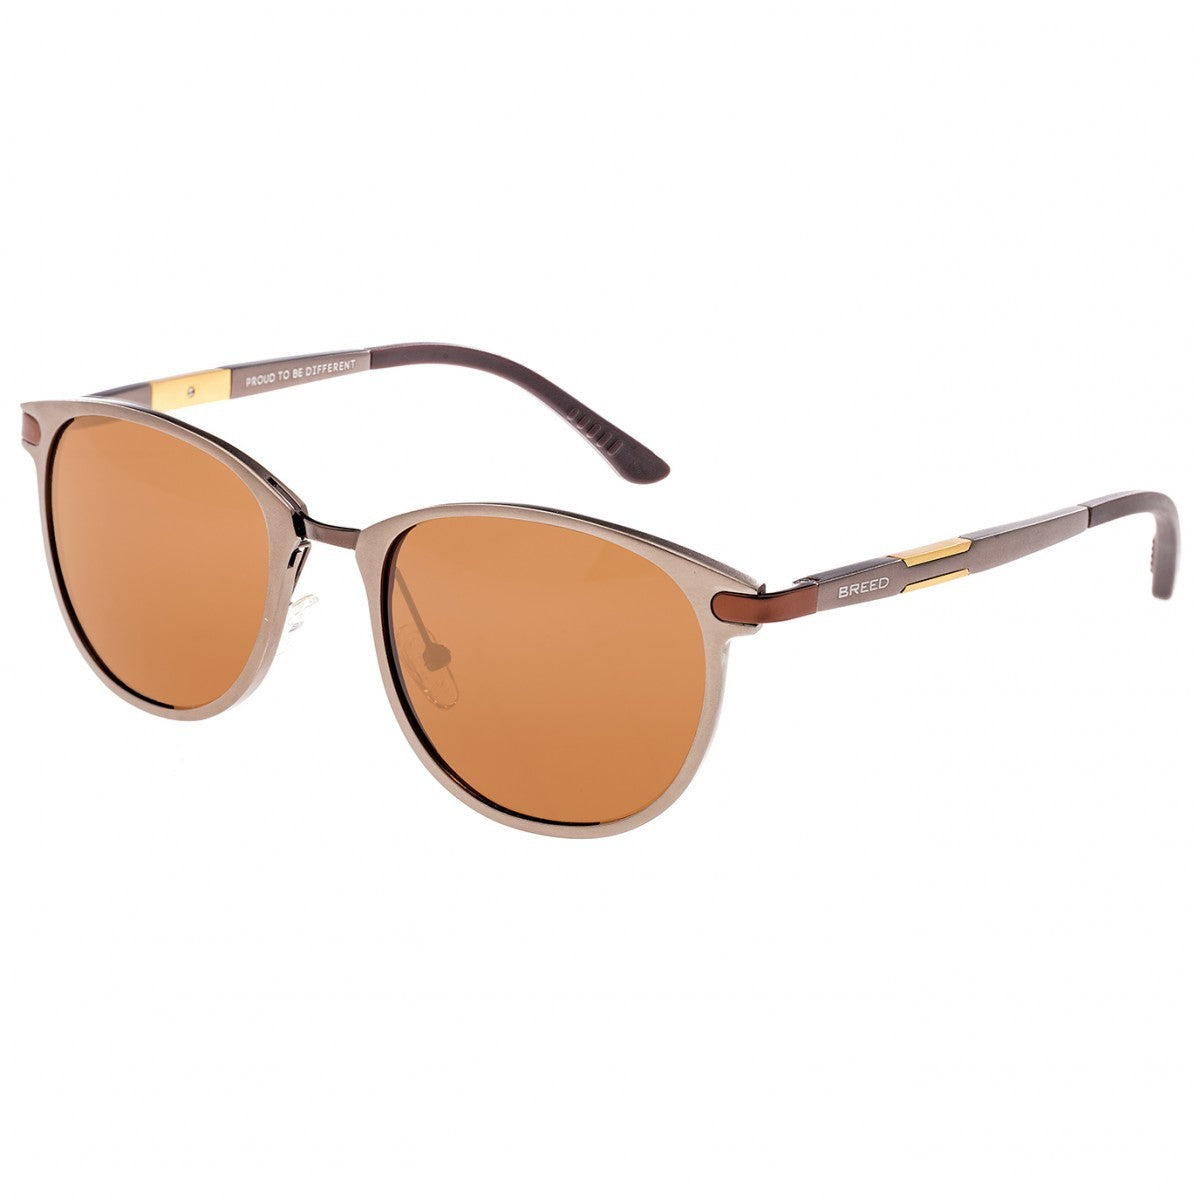 Breed Orion Aluminium Polarized Sunglasses - Brown/Brown - BSG020BN